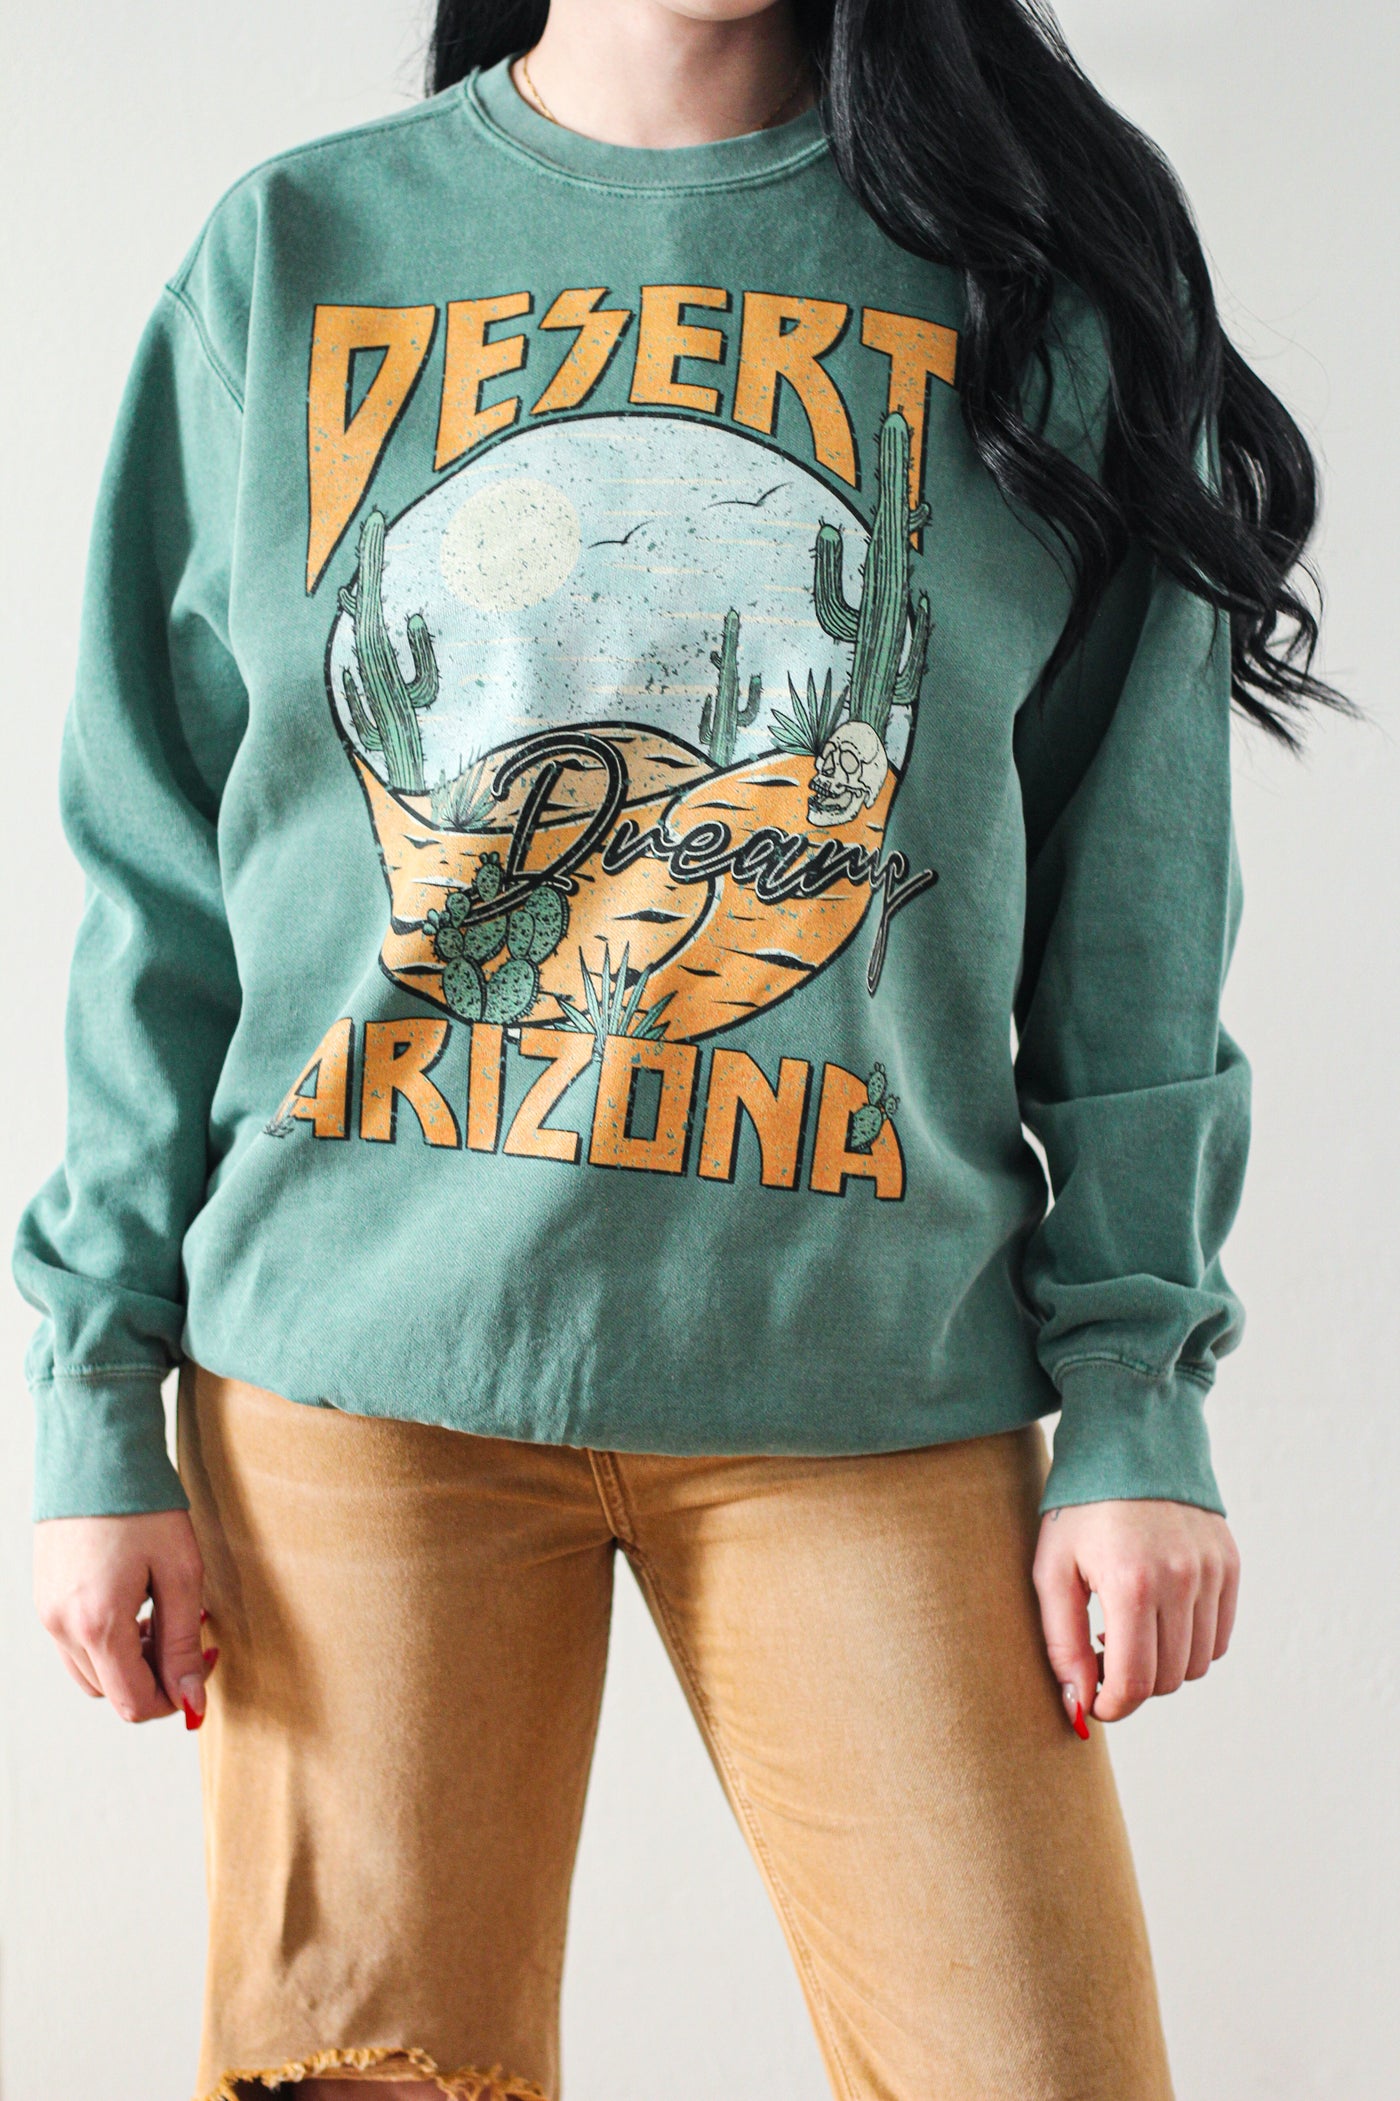 Desert Arizona Pigment Dyed Color Comfort Tee/Sweatshirt